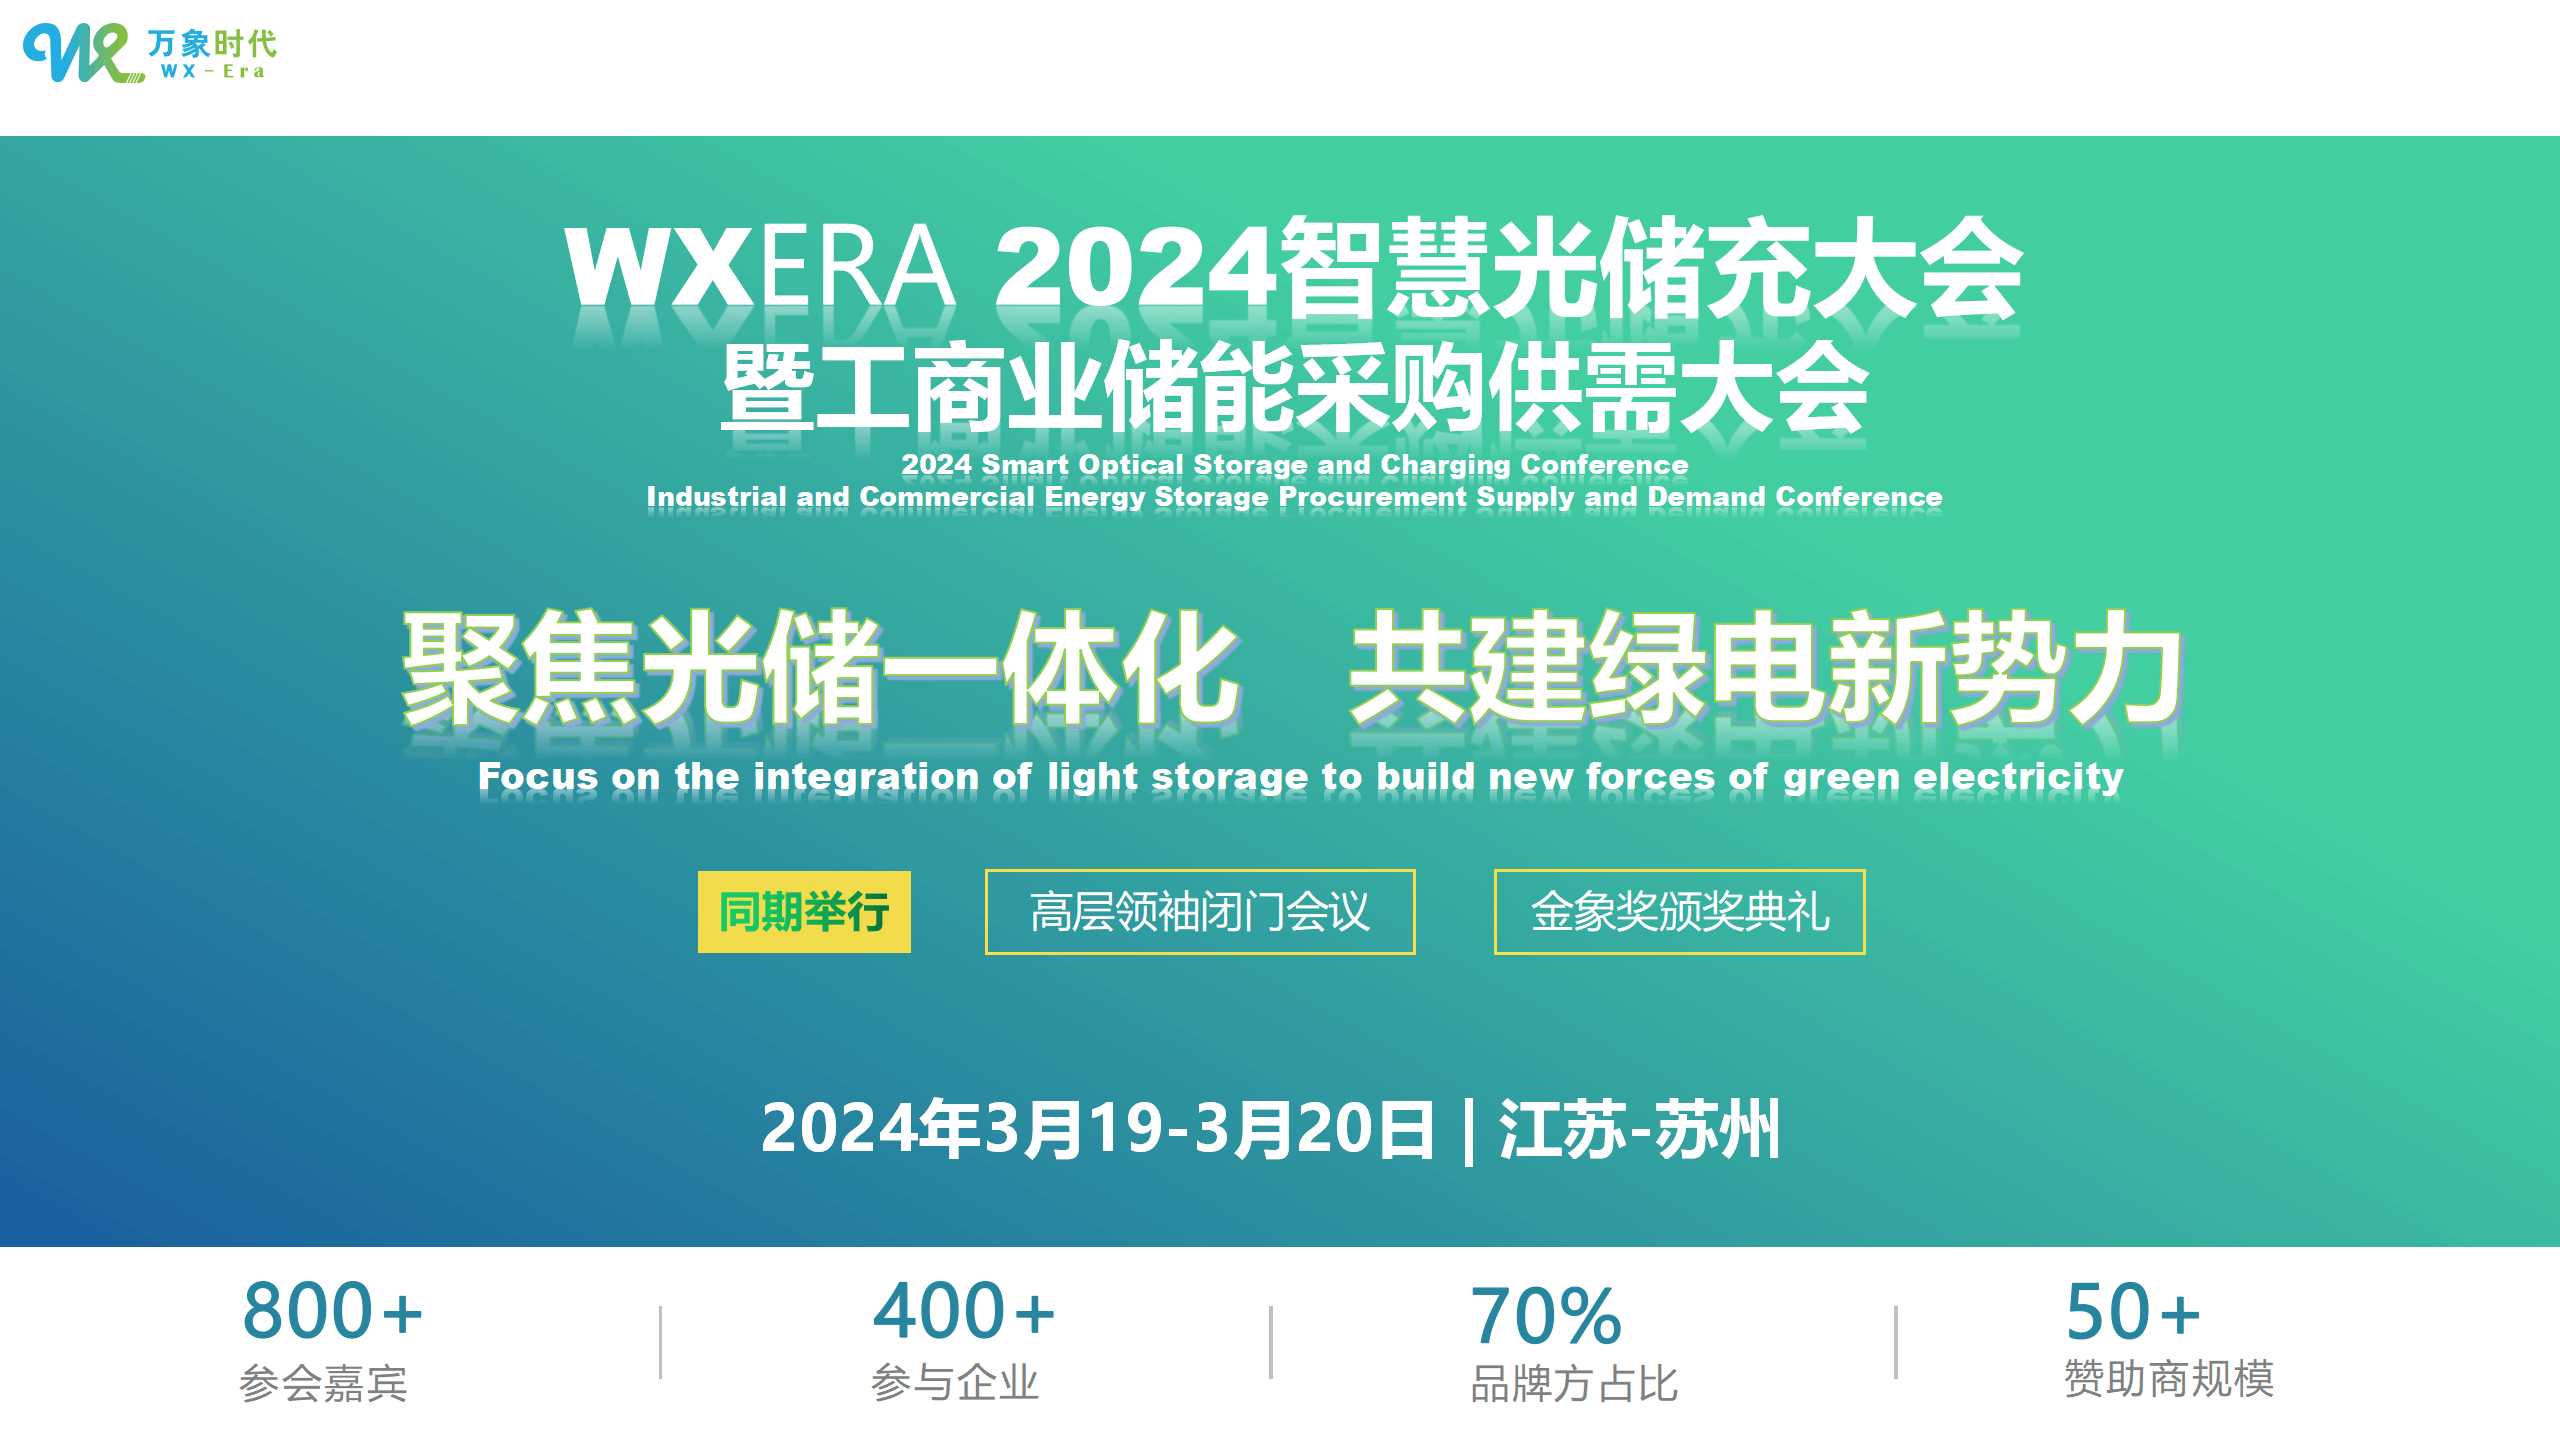 WXERA 2024万象时代智慧光储充大会 暨工商业储能采购供需大会